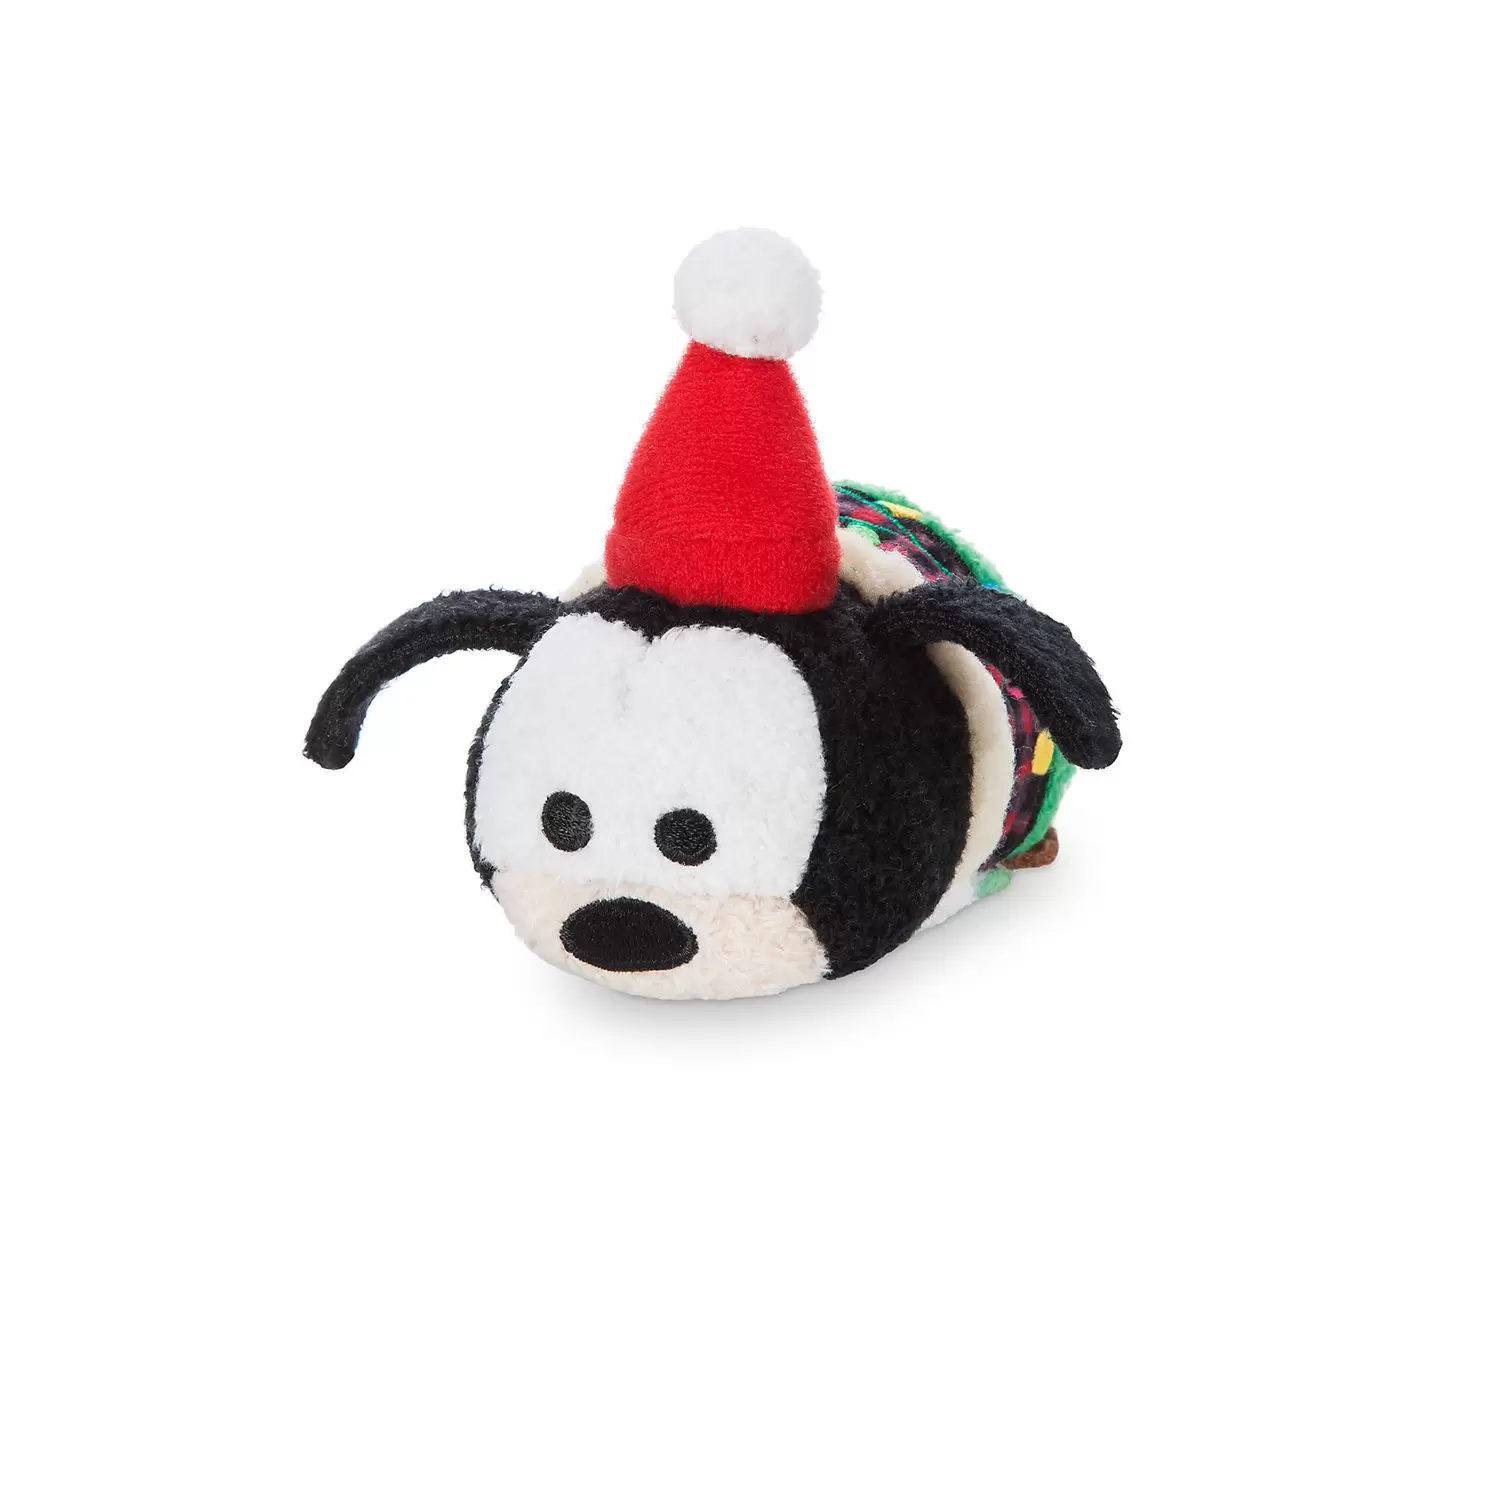 Mini Tsum Tsum Plush - Goofy Christmas Holiday